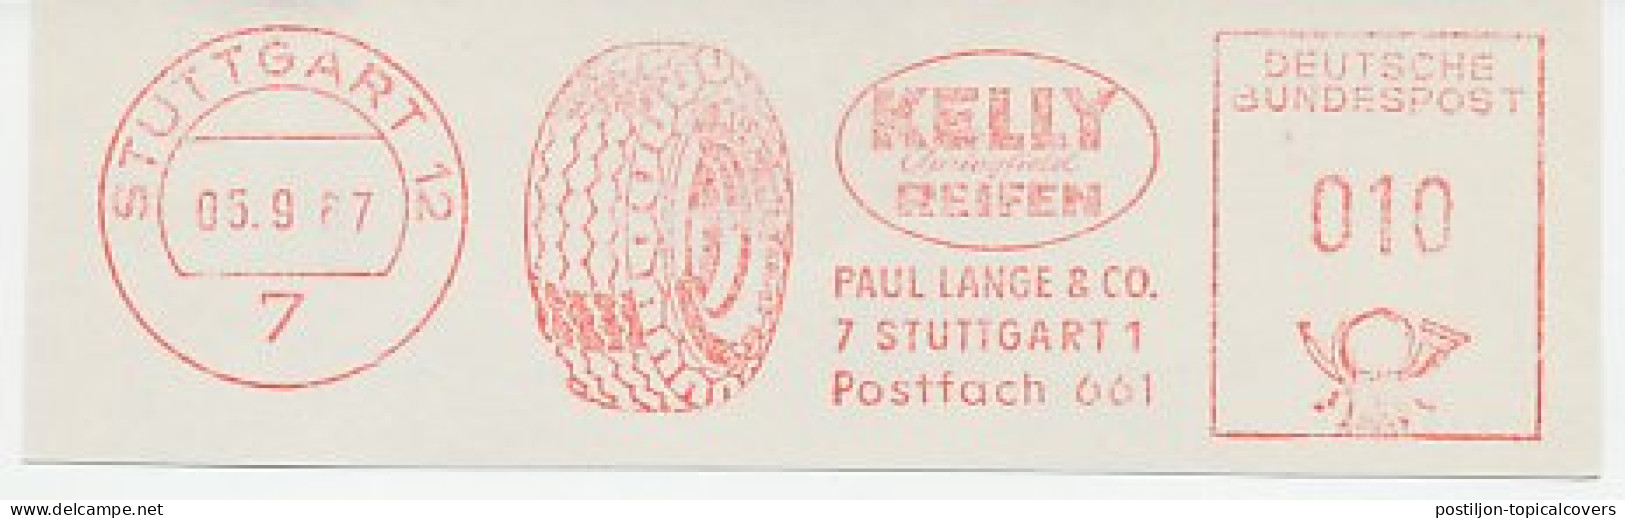 Meter Cut Germany 1967 Tire - Kelly - Unclassified